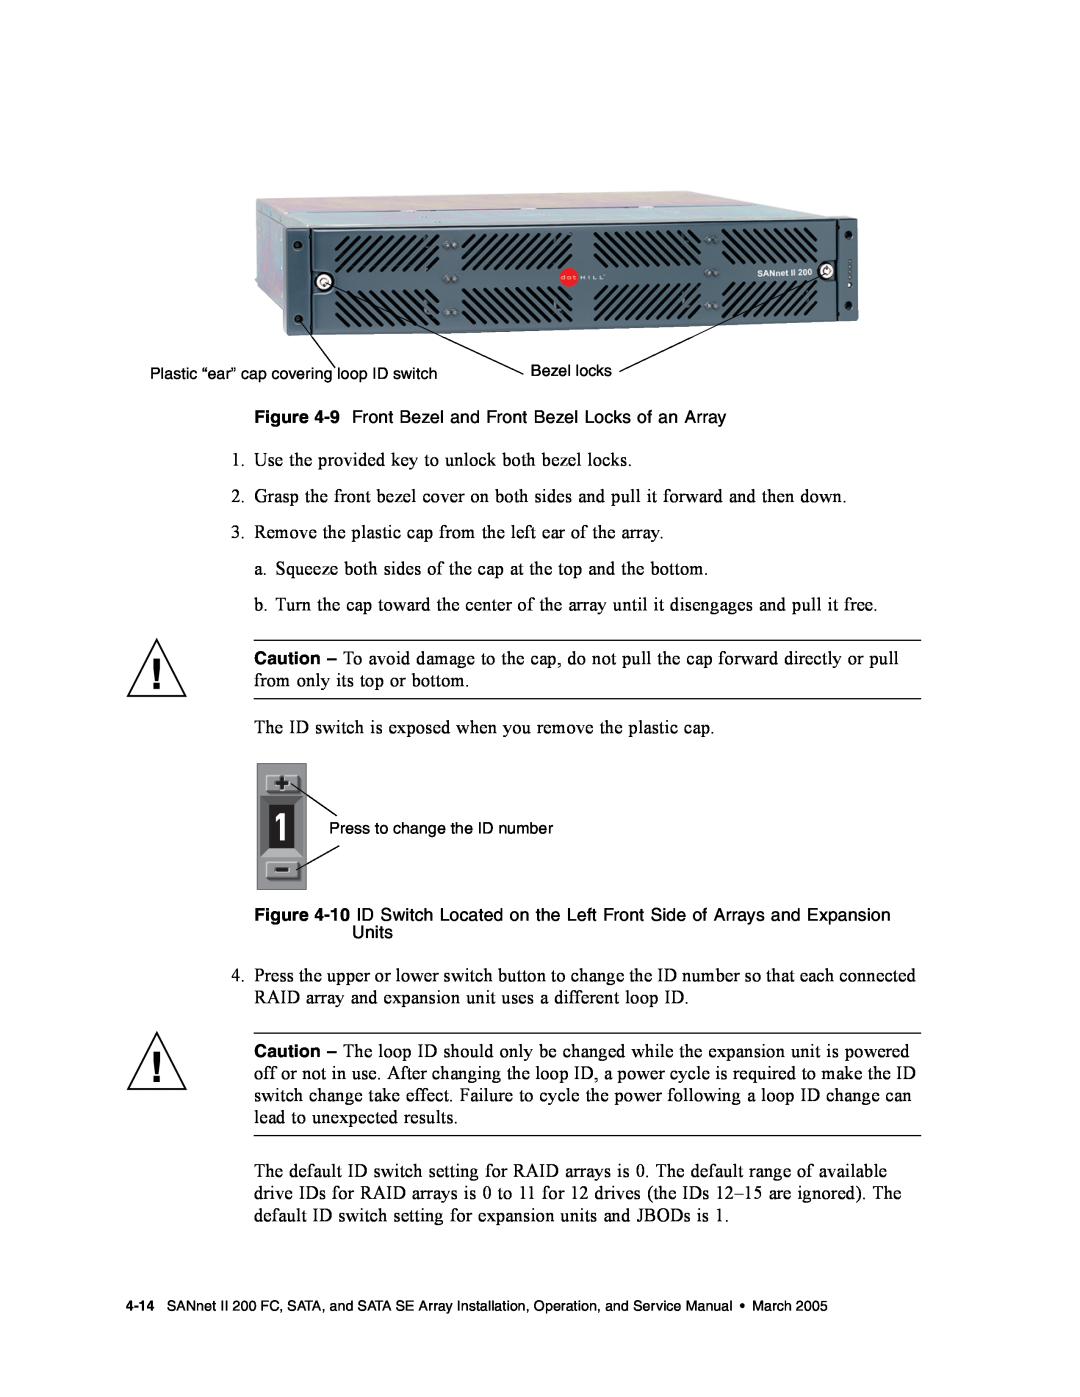 Dot Hill Systems II 200 FC service manual Use the provided key to unlock both bezel locks 